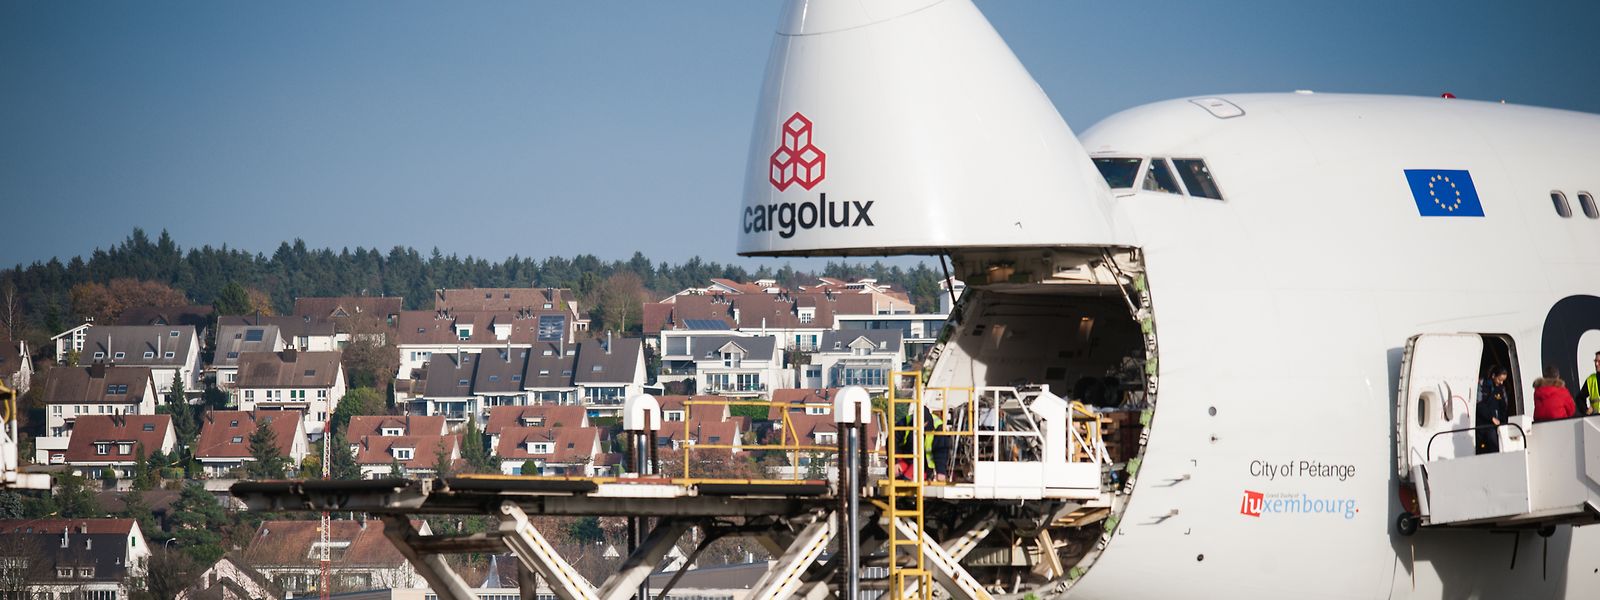 Letztes Jahr transportierte Cargolux geringfügig weniger als 2017 - verdiente aber mehr.